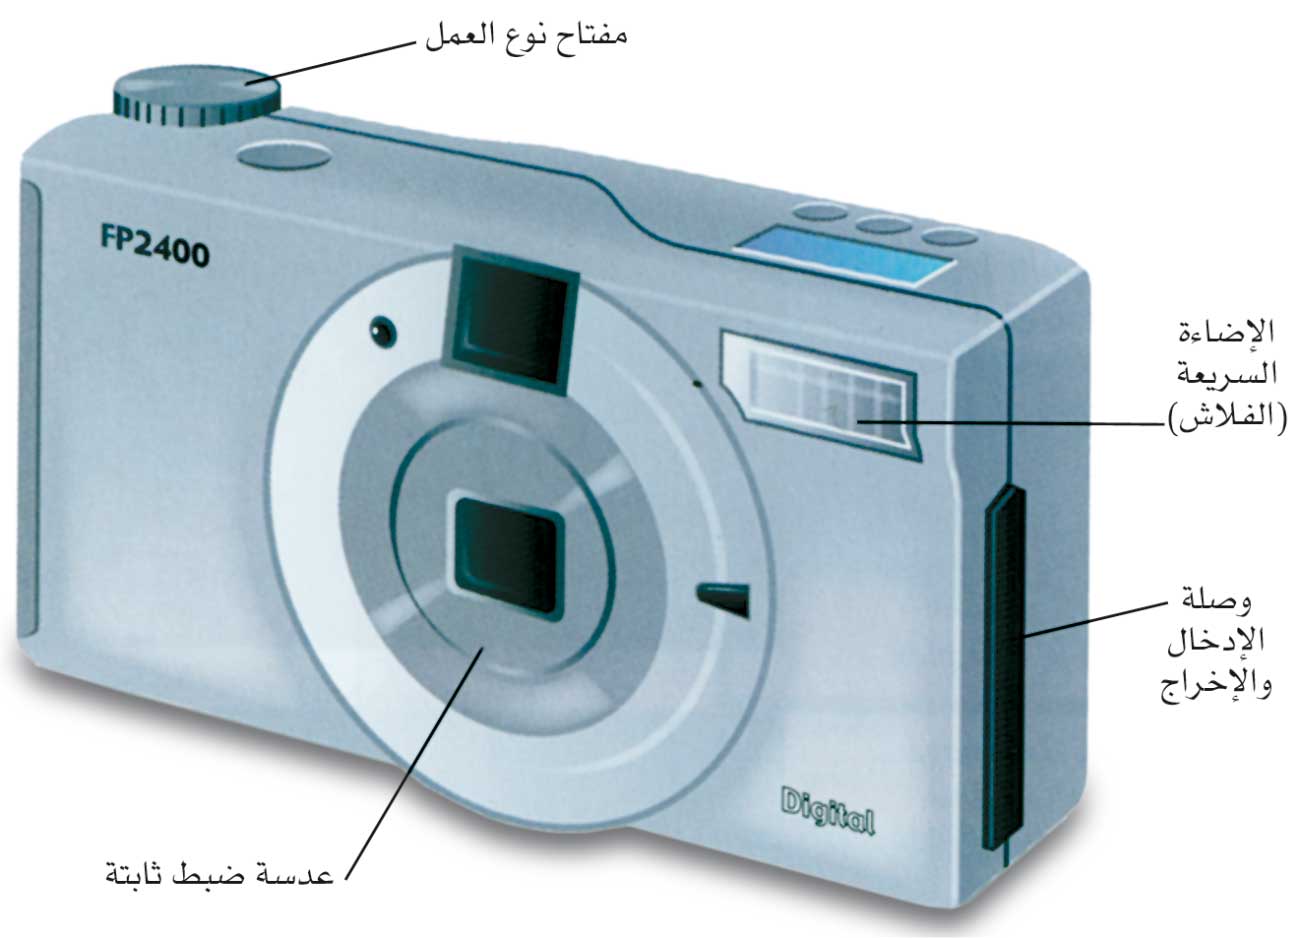 الموسوعة العربية | الكاميرات الرقمية